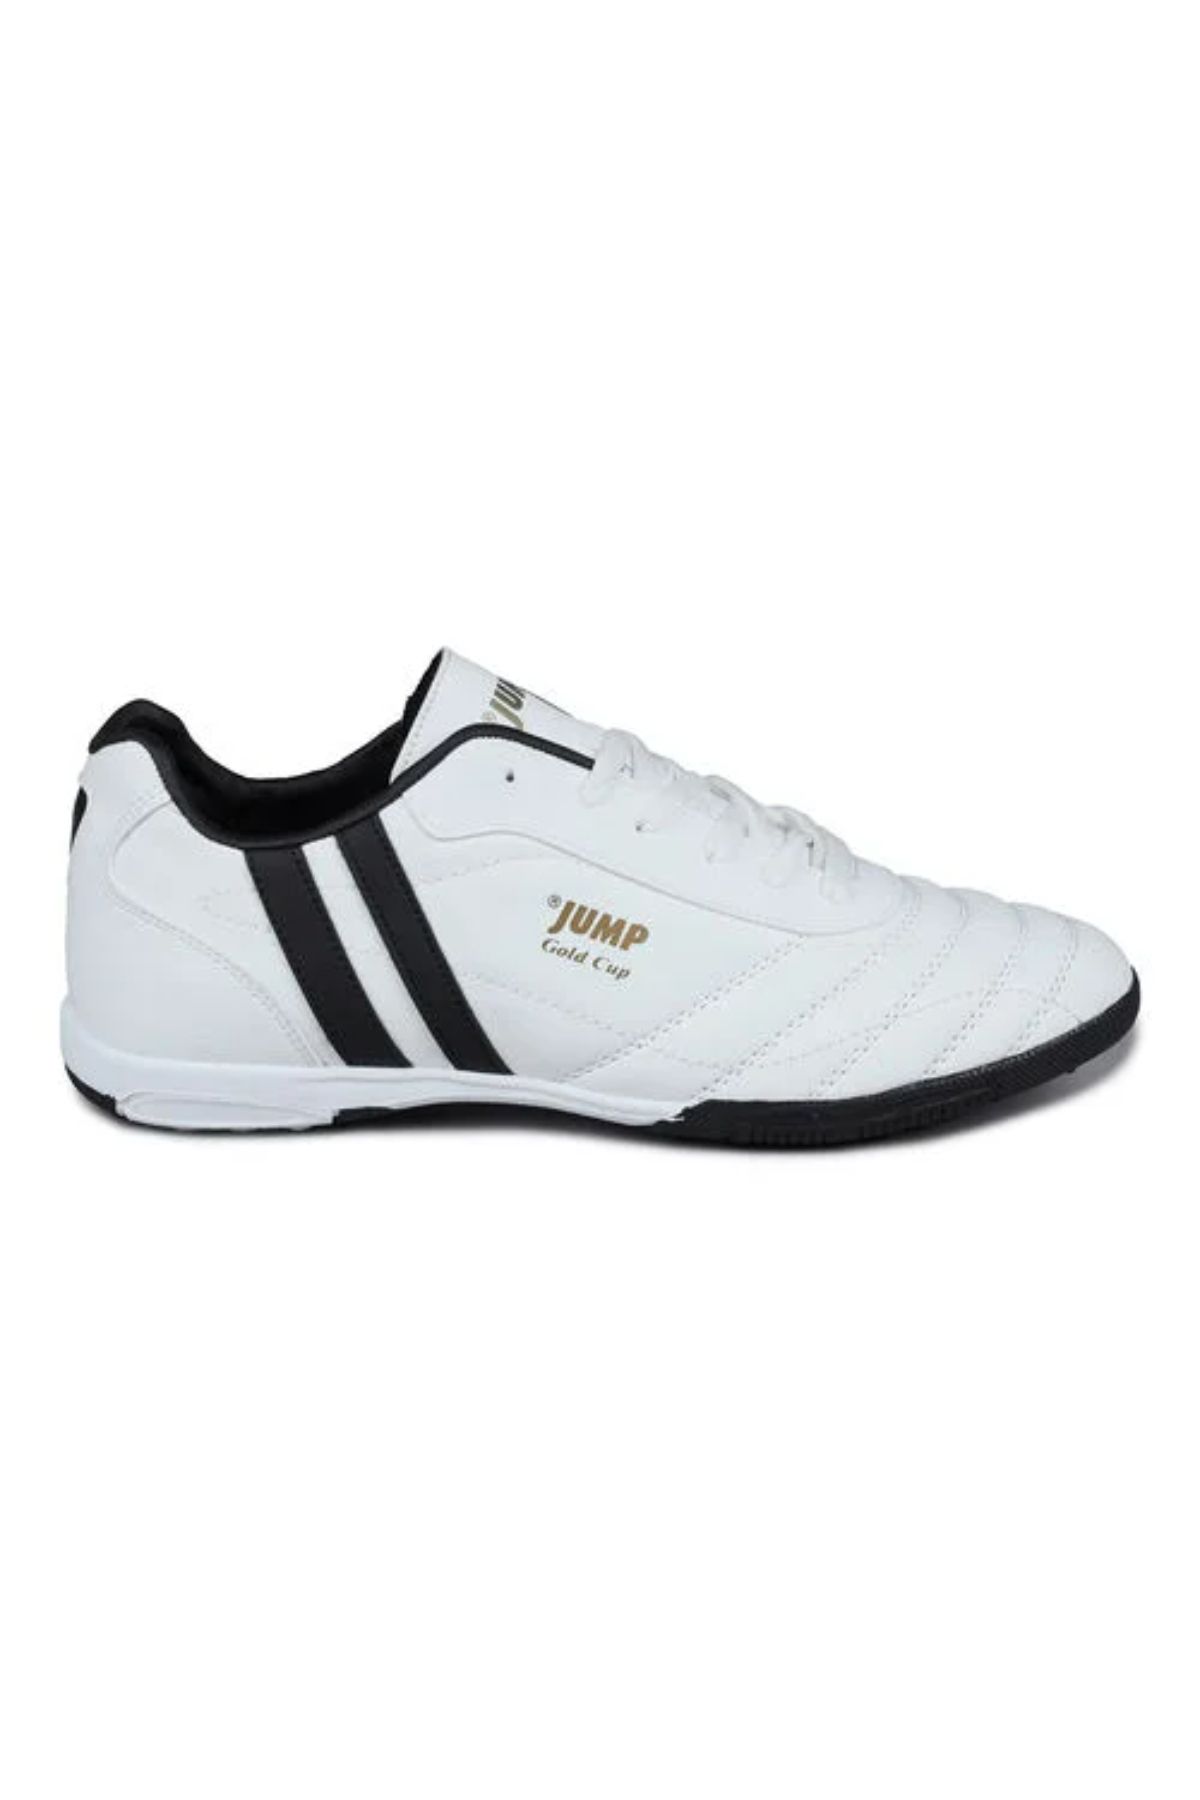 Jump 13258 Beyaz Halı Saha Krampon Futbol Ayakkabısı Beyaz